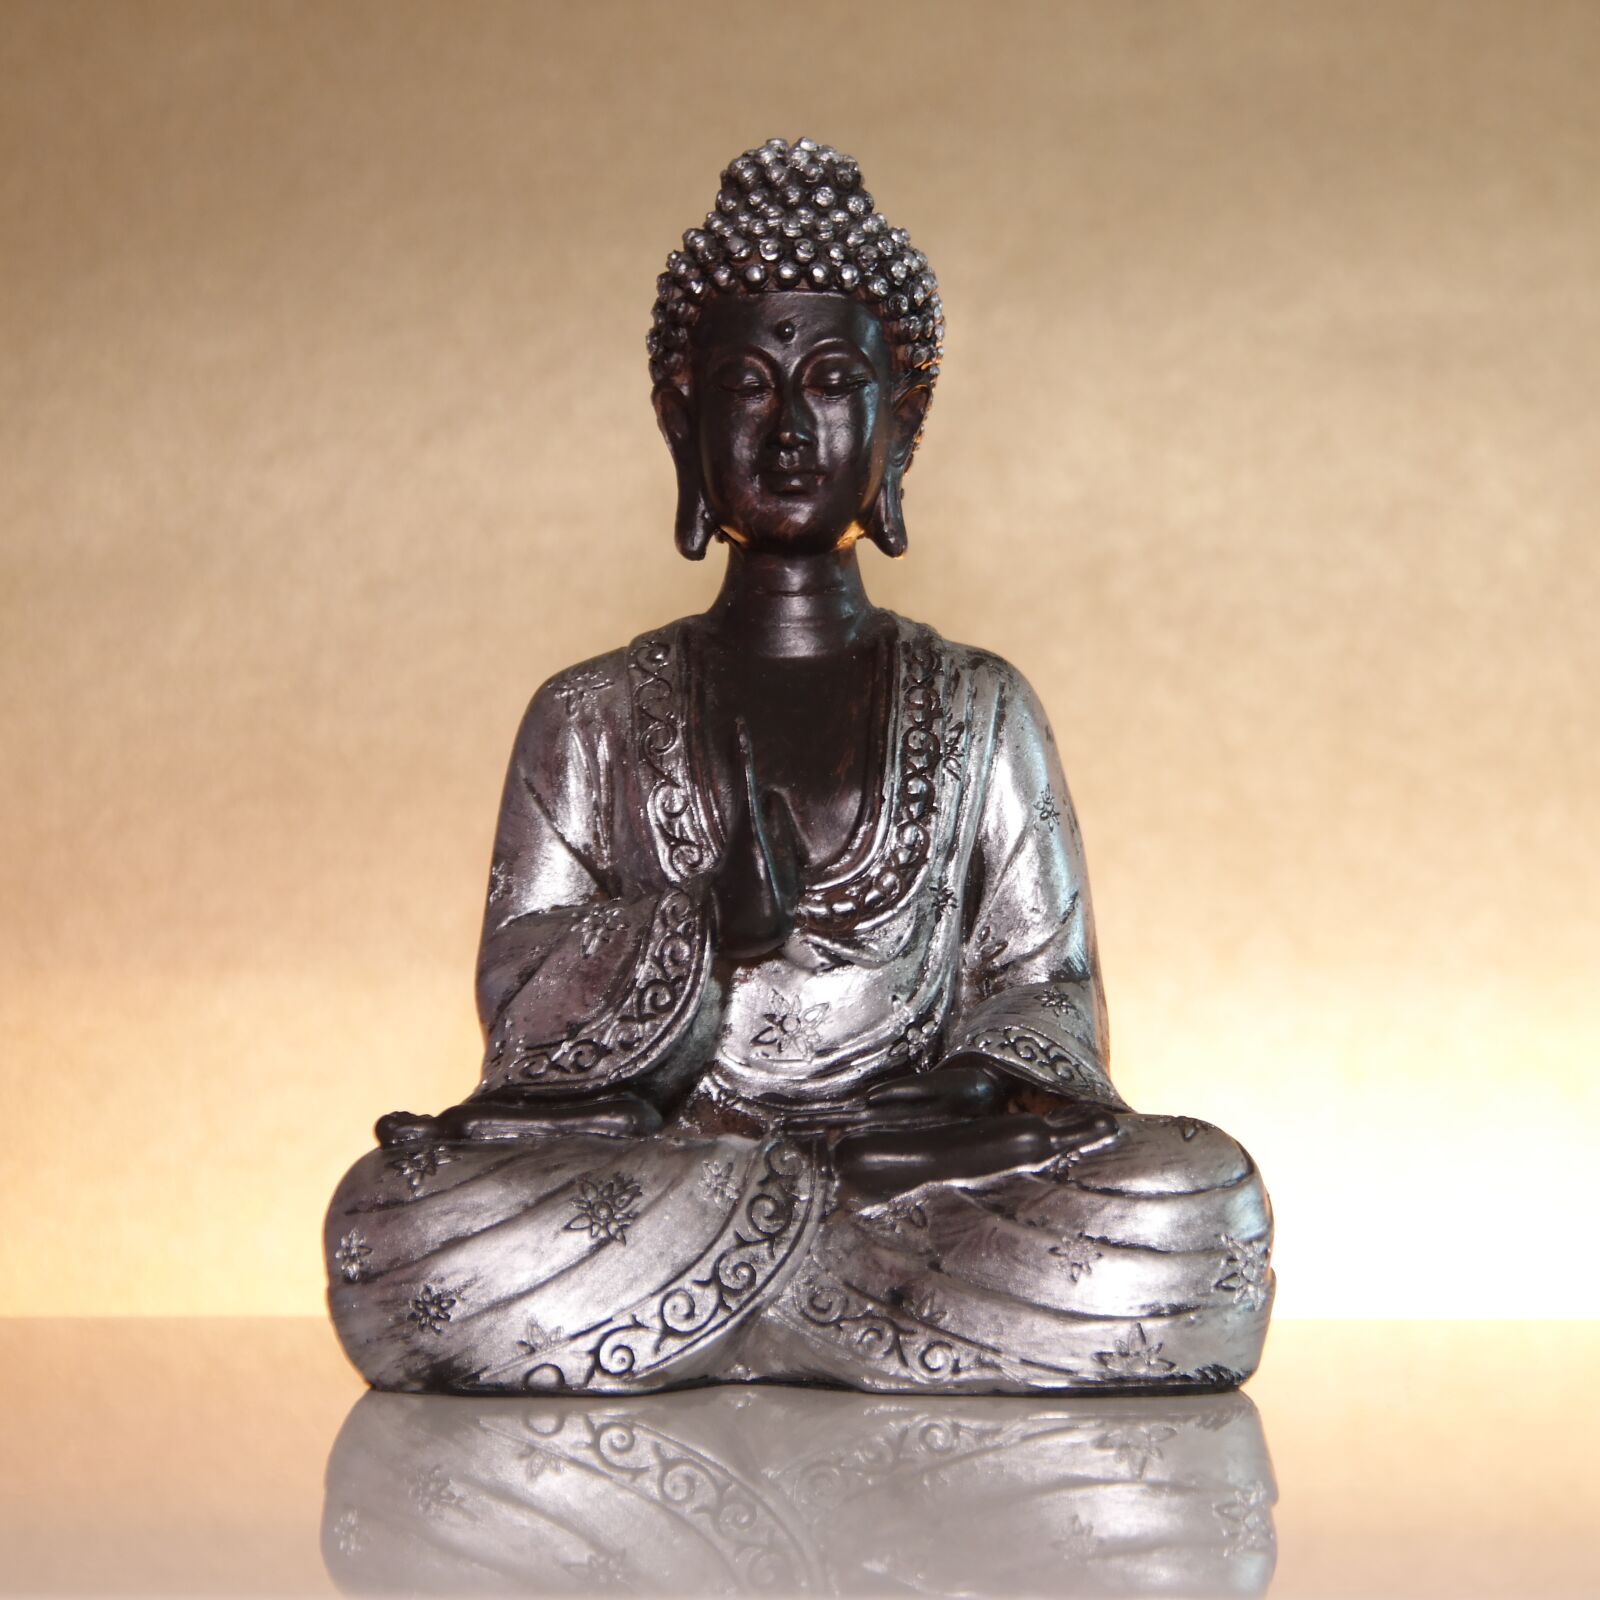 NX 18-200mm F3.5-6.3 sample photo. Buddha, buddhism, statue photography